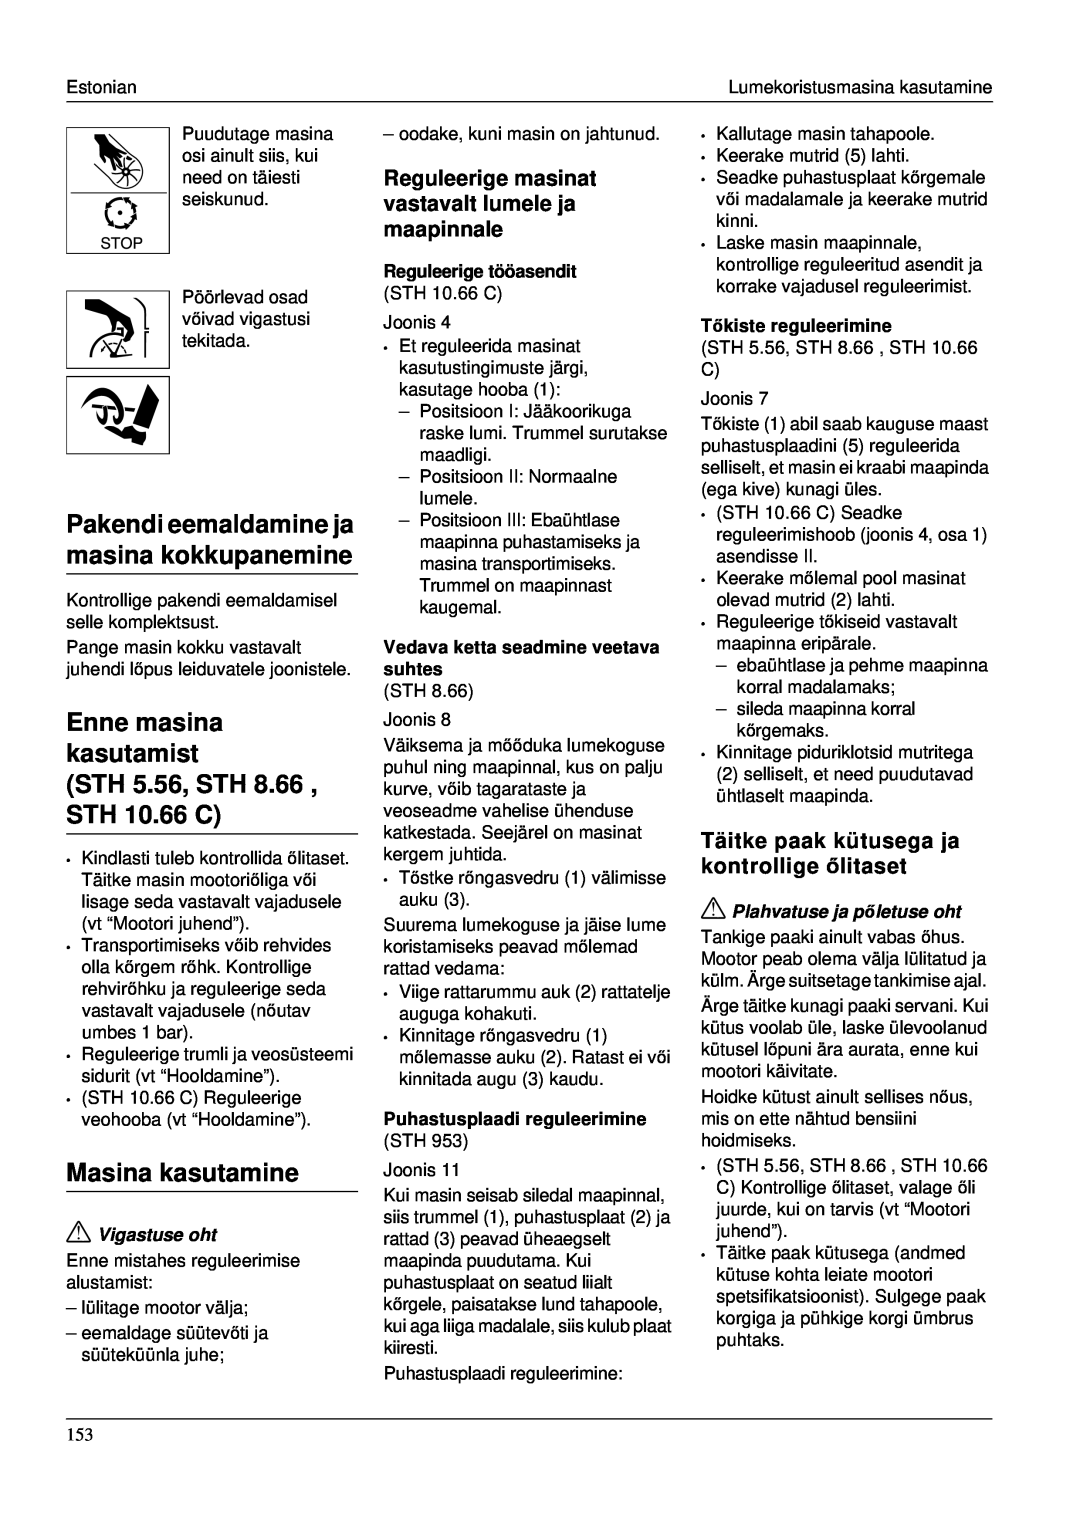 Karcher STH 953 manual Enne masina kasutamist STH 5.56, STH 8.66 , STH 10.66 C, Masina kasutamine, Vigastuse oht 